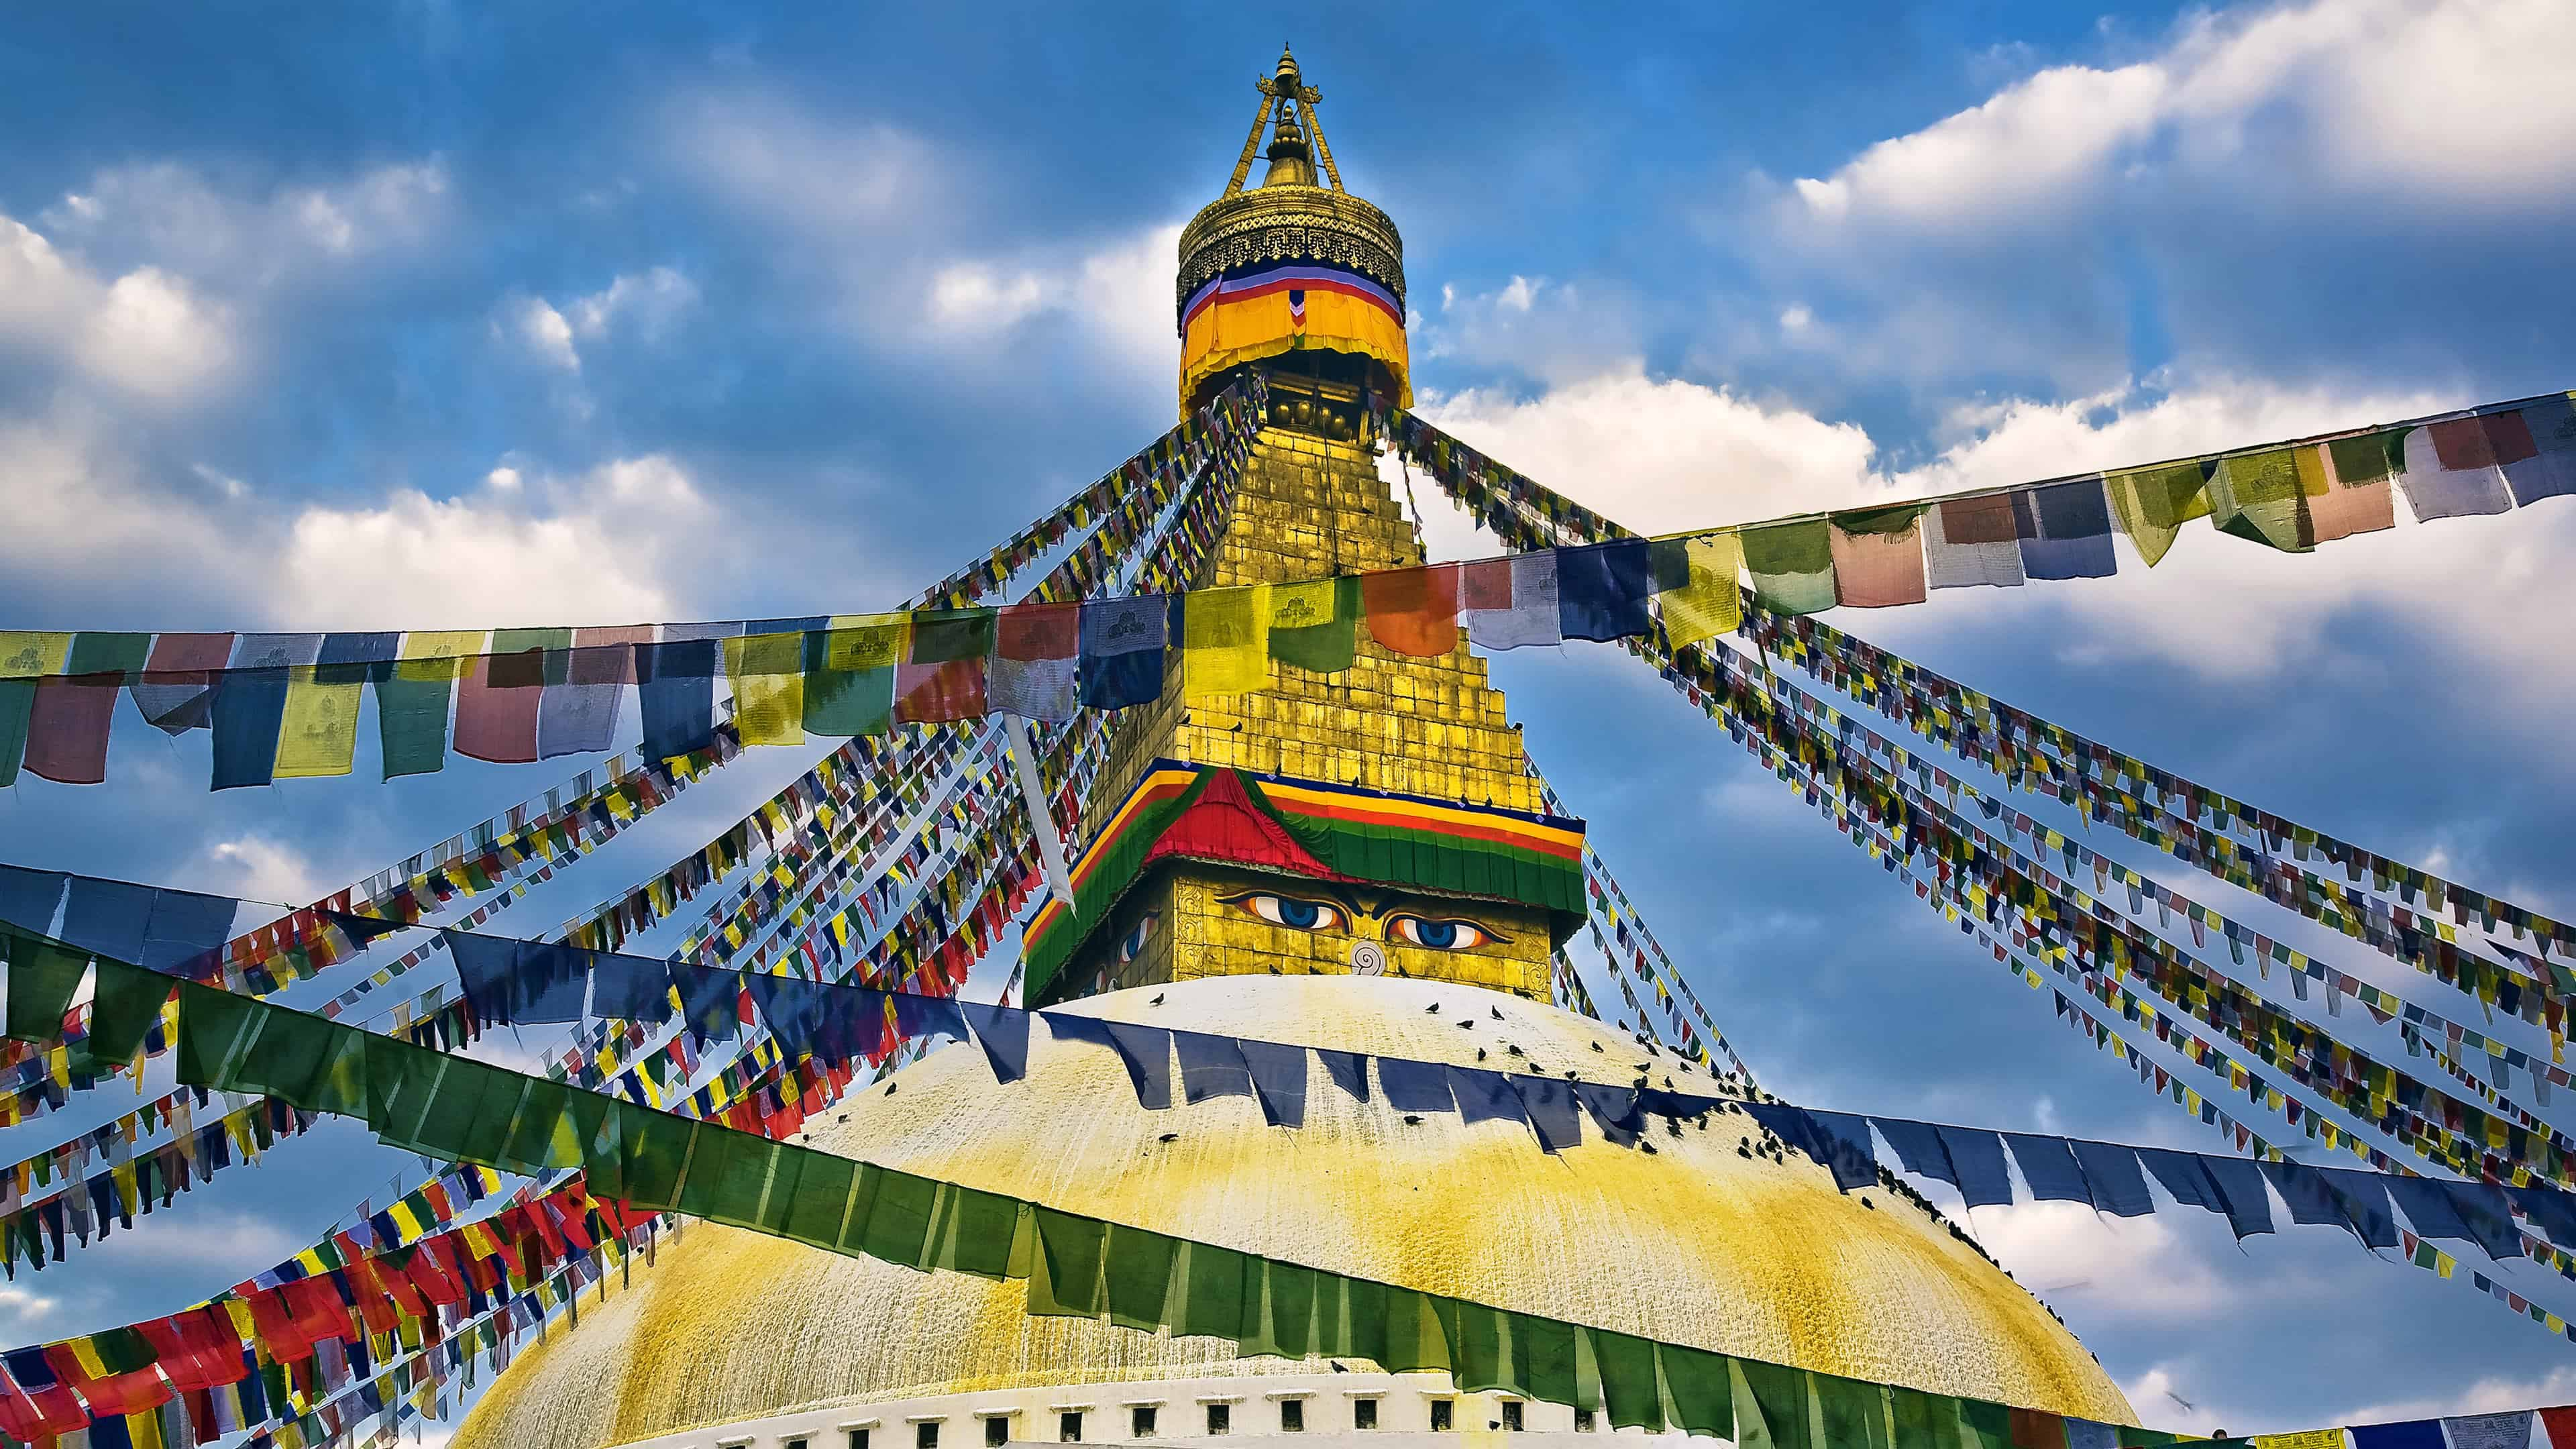 3840x2160 Buddha Eyes Swayambhunath Temple Kathmandu Nepal UHD 4K Wallpaper .cc